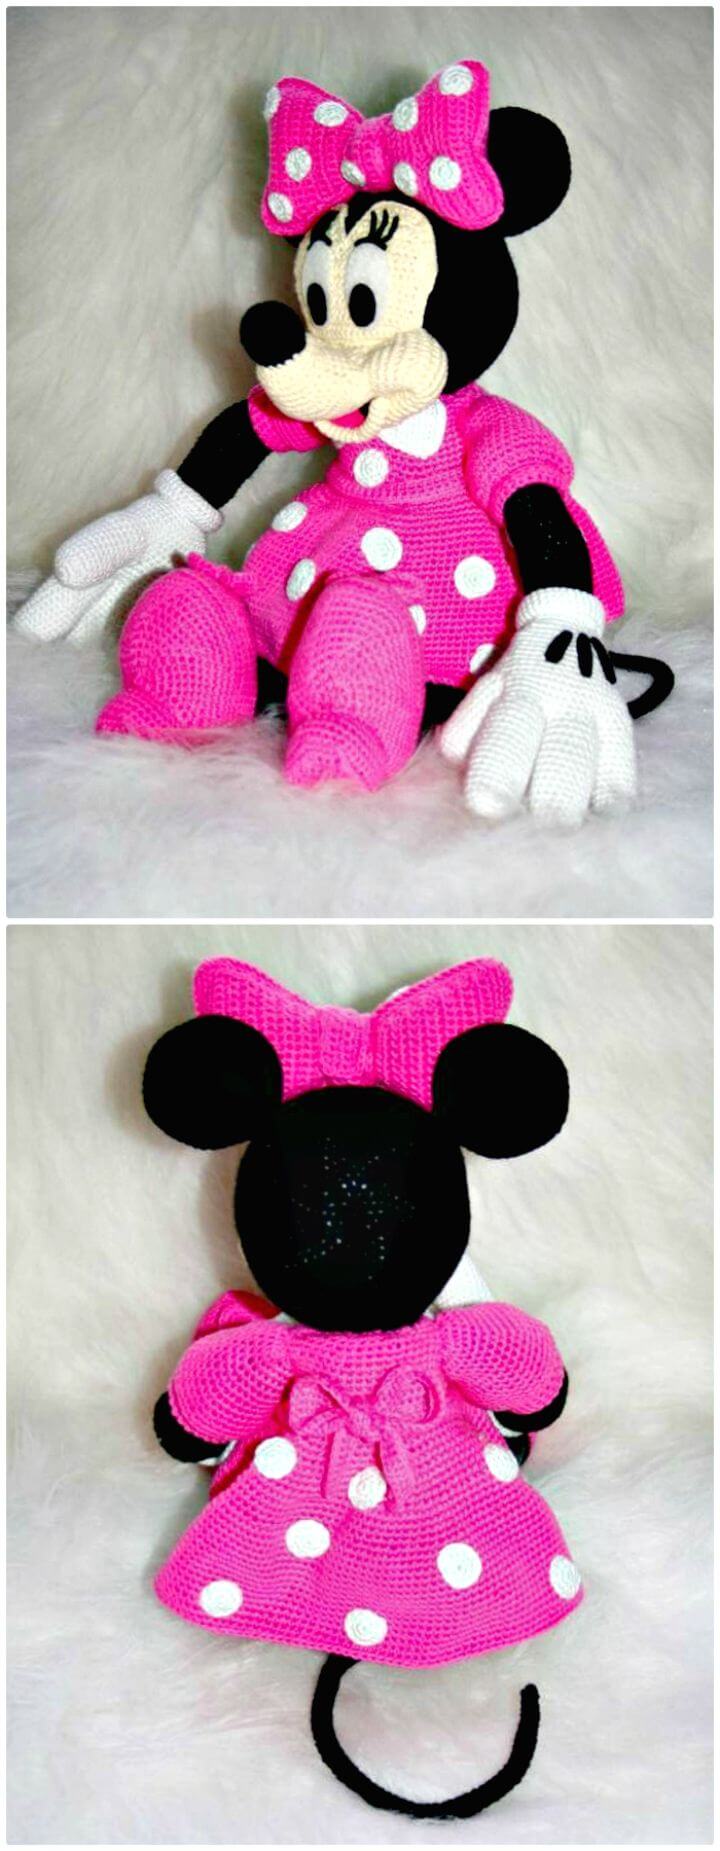 Patrón de amigurumi de Minnie Mouse de Disney de ganchillo gratis